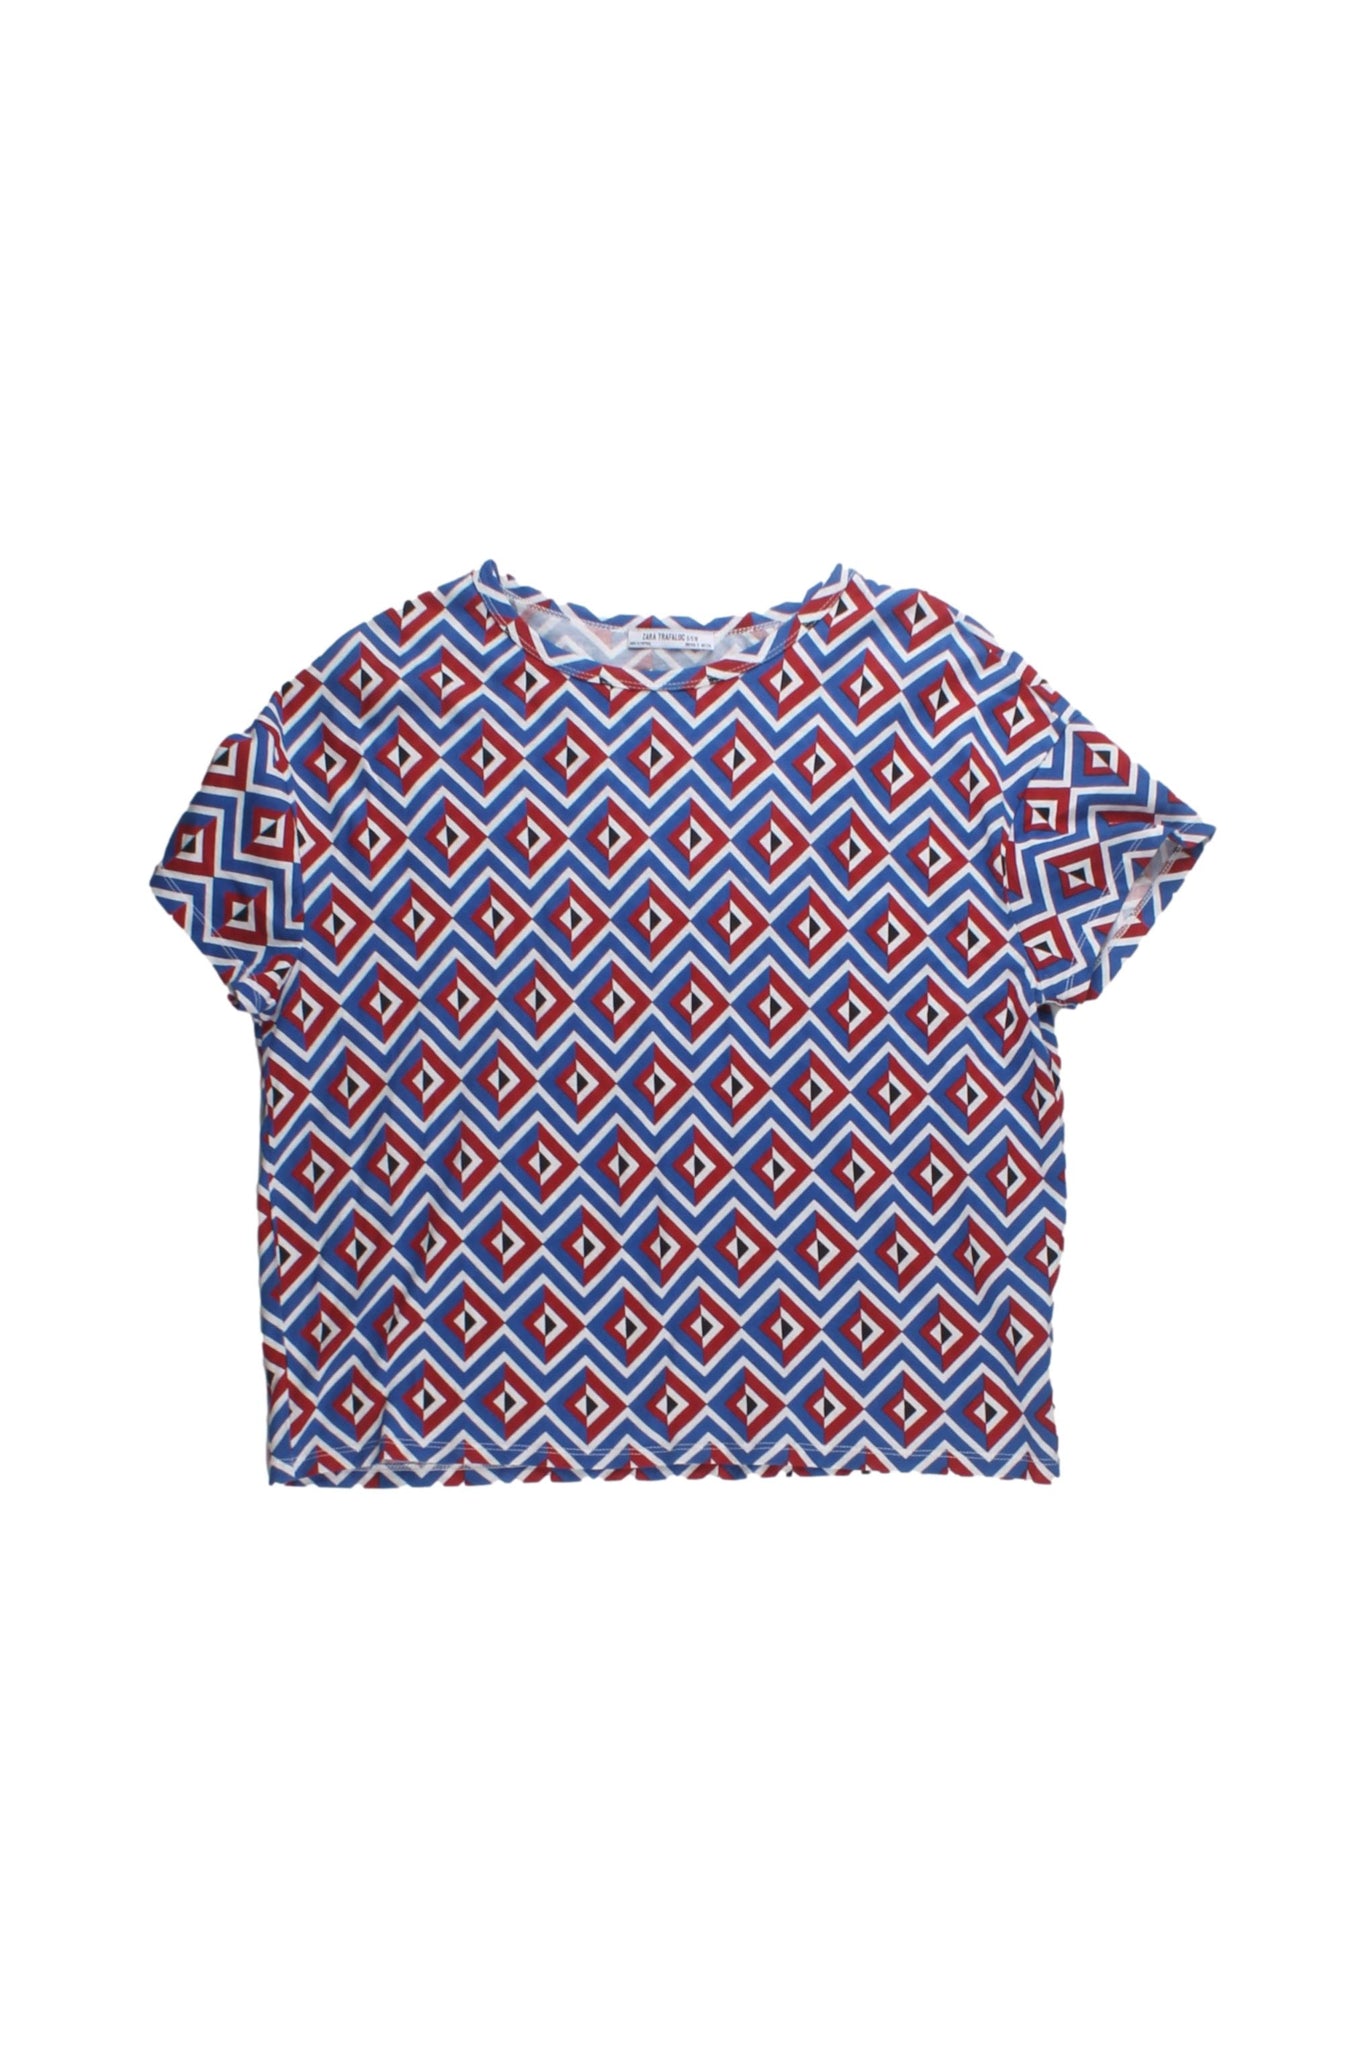 ZARA - Camiseta Multicolor Con Estampado